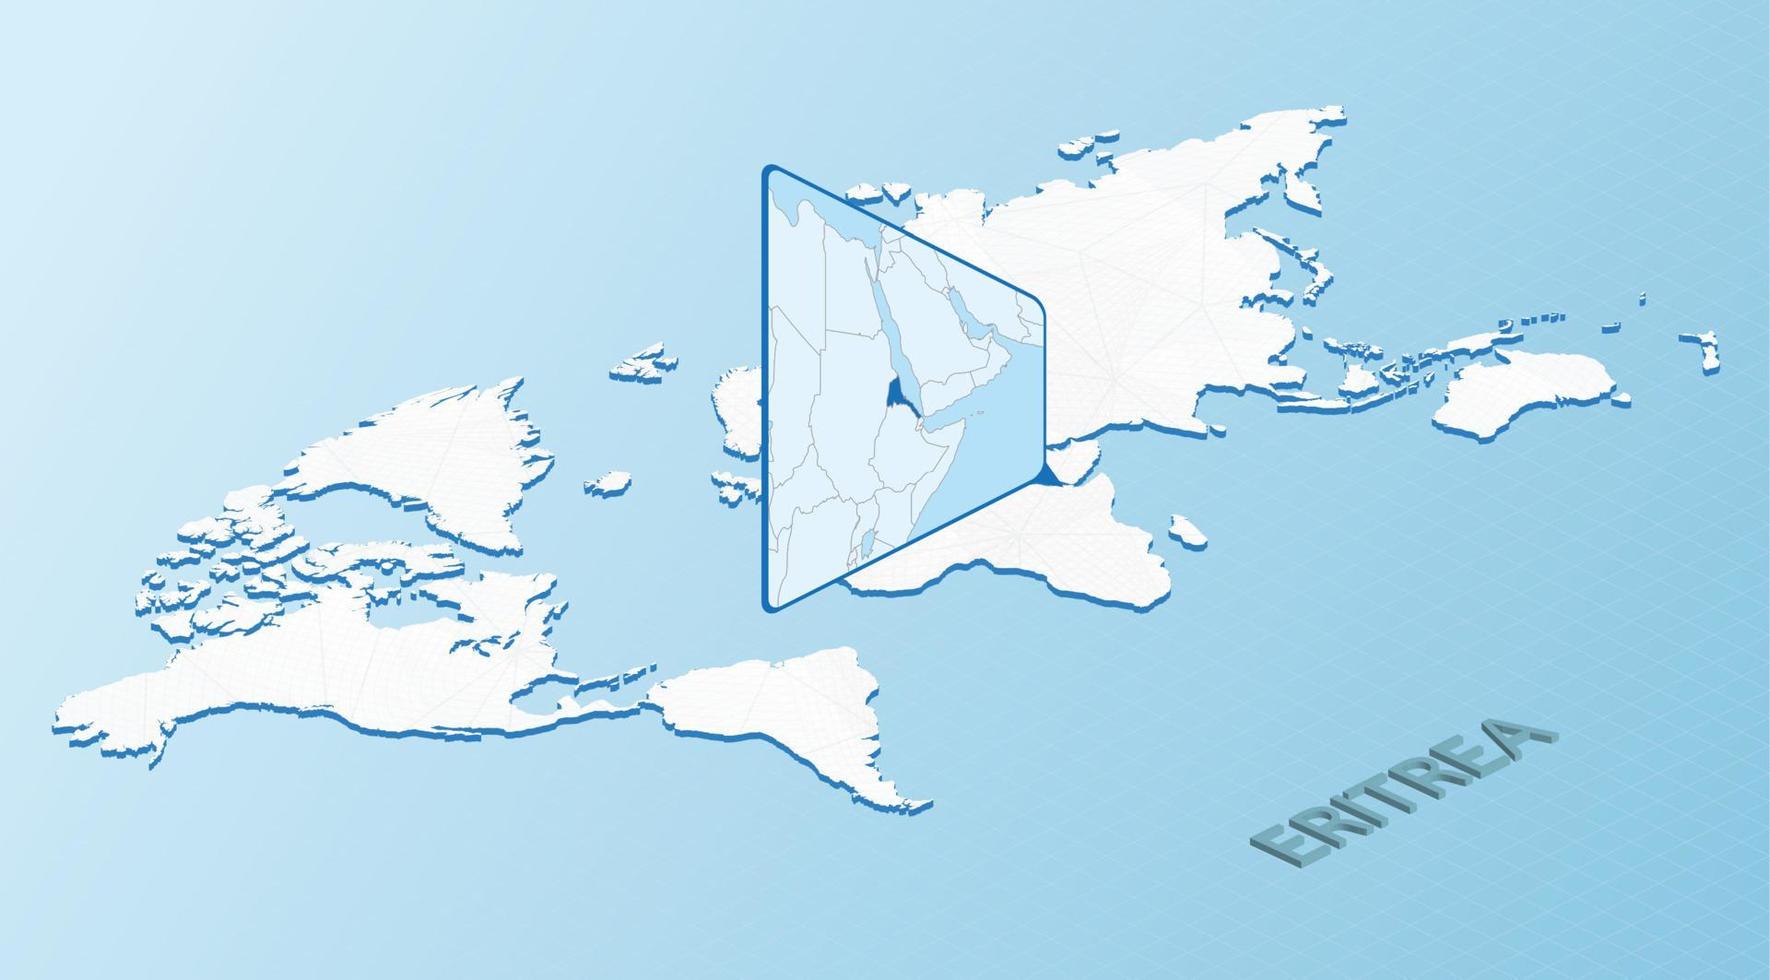 carte du monde en style isométrique avec carte détaillée de l'érythrée. carte bleu clair de l'érythrée avec carte du monde abstraite. vecteur